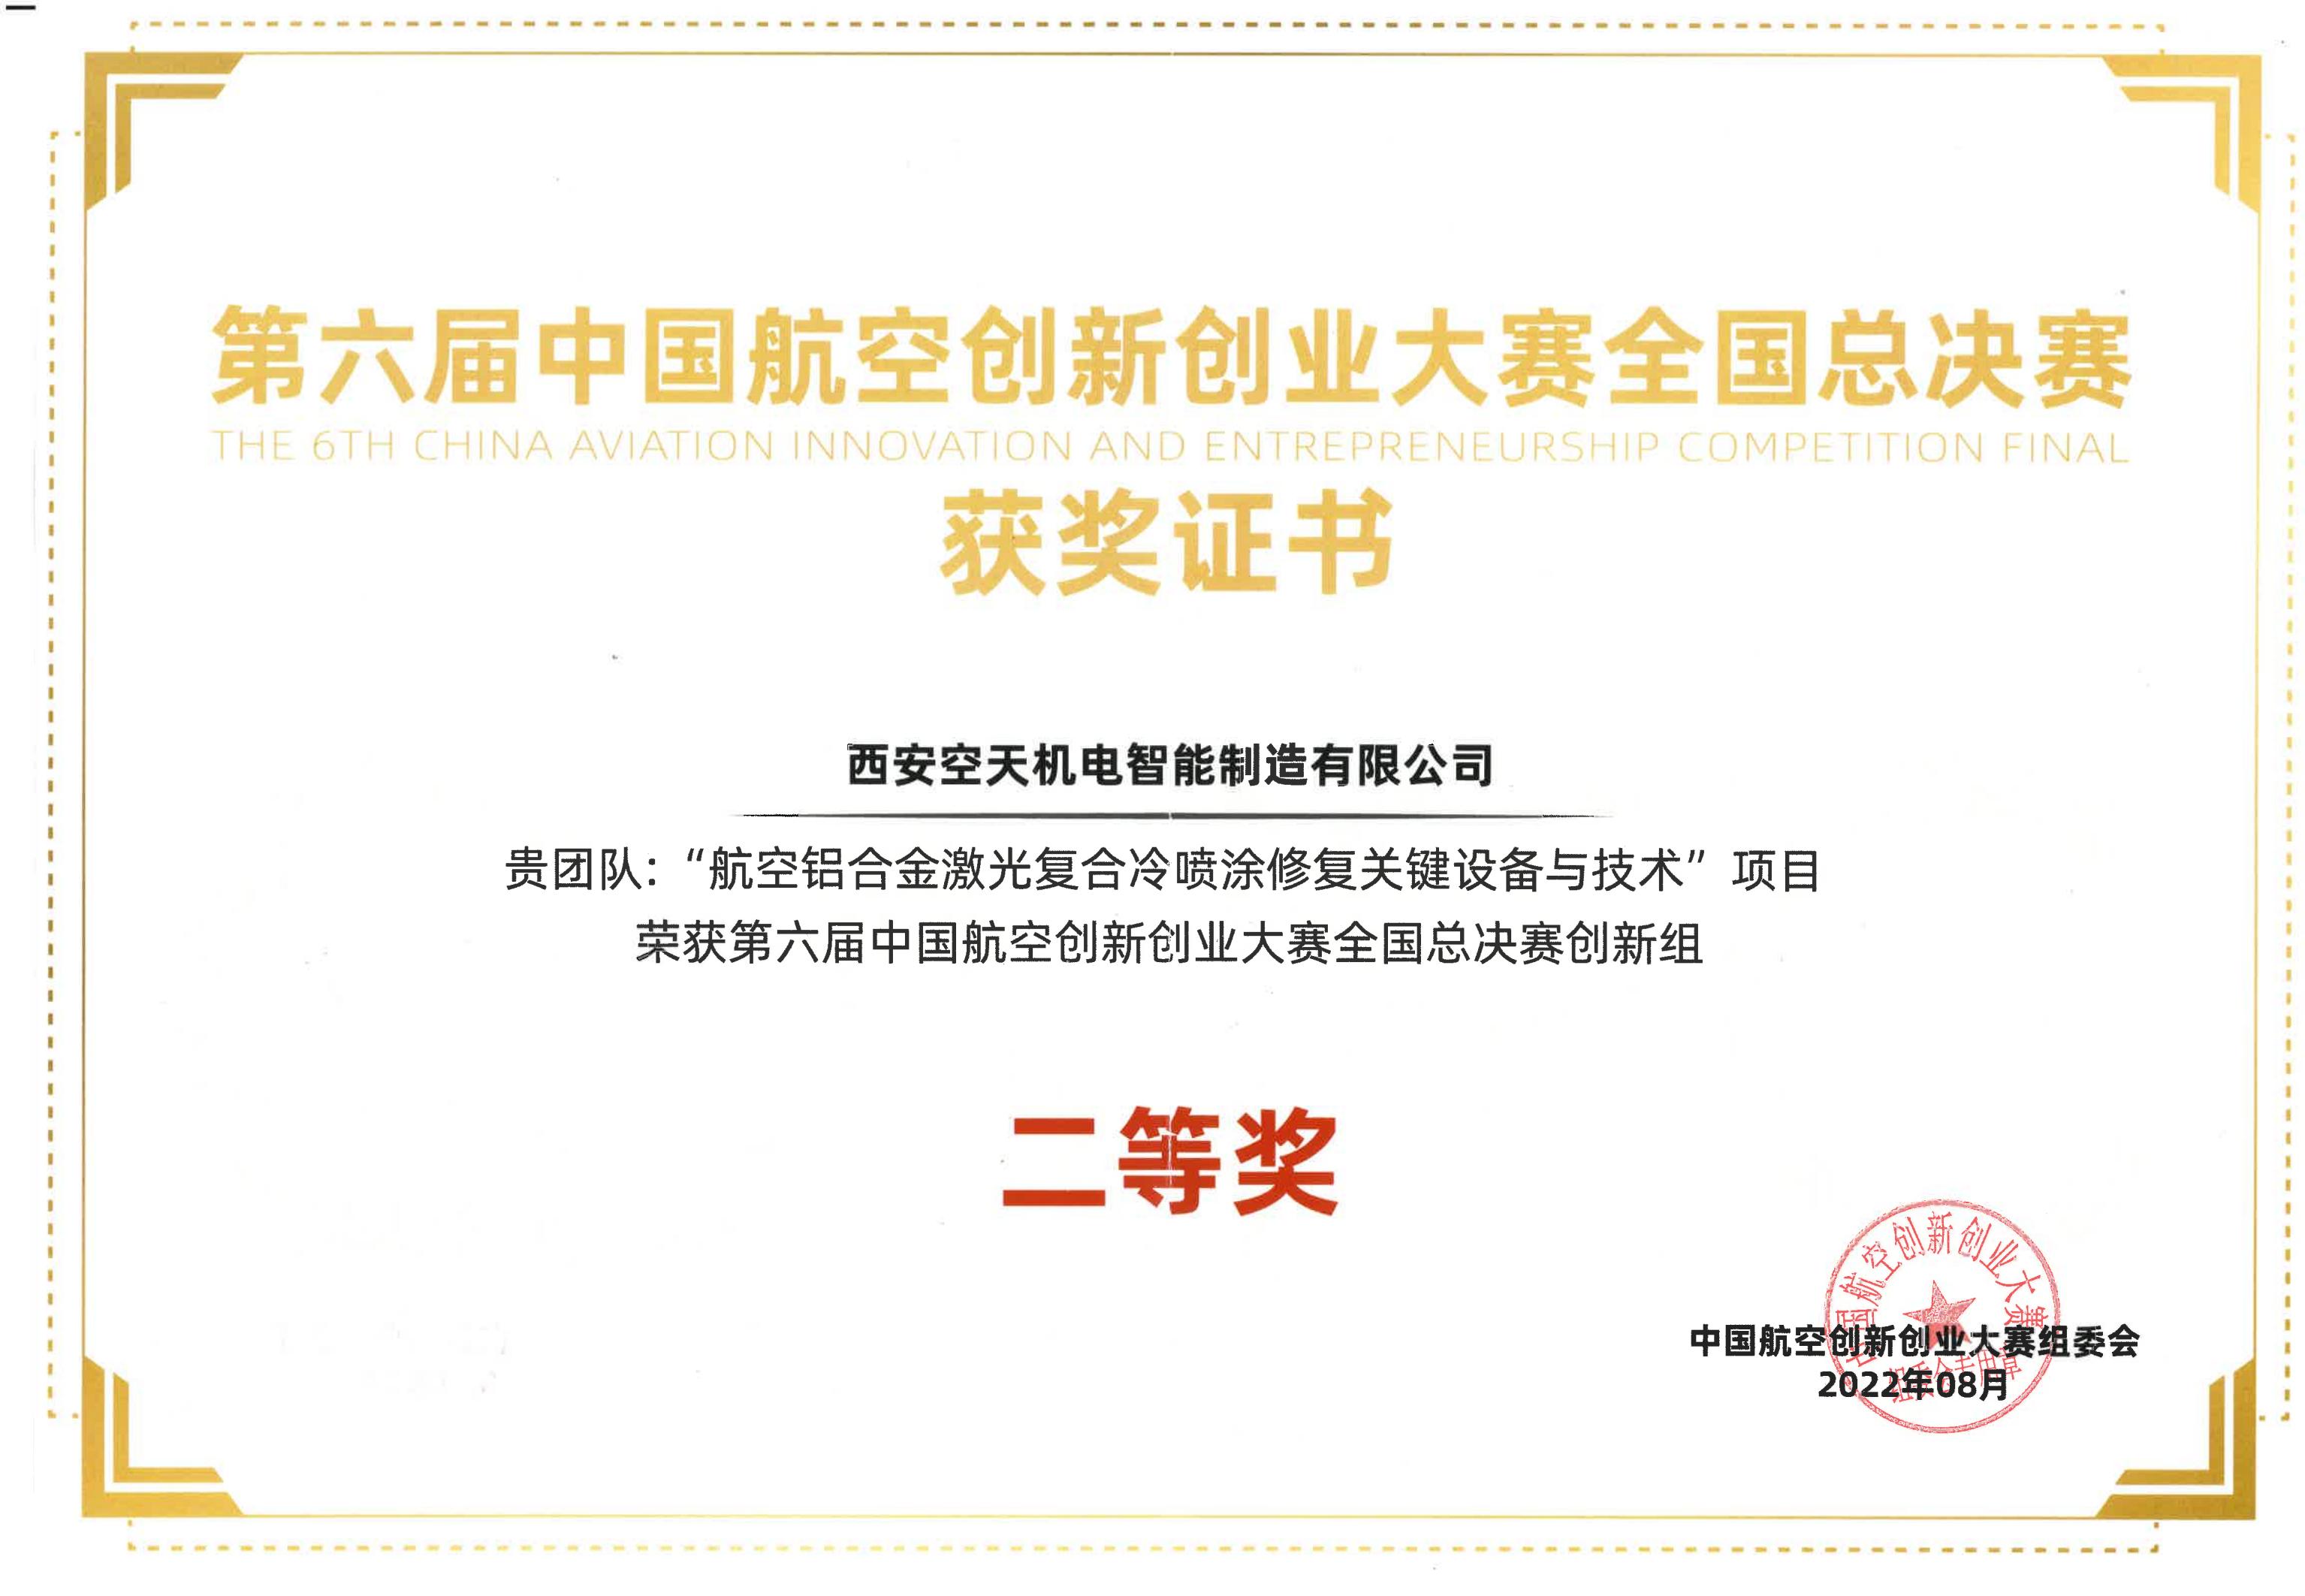 第六届中国航空创新创业大赛全国总决赛二等奖证书_00.jpg